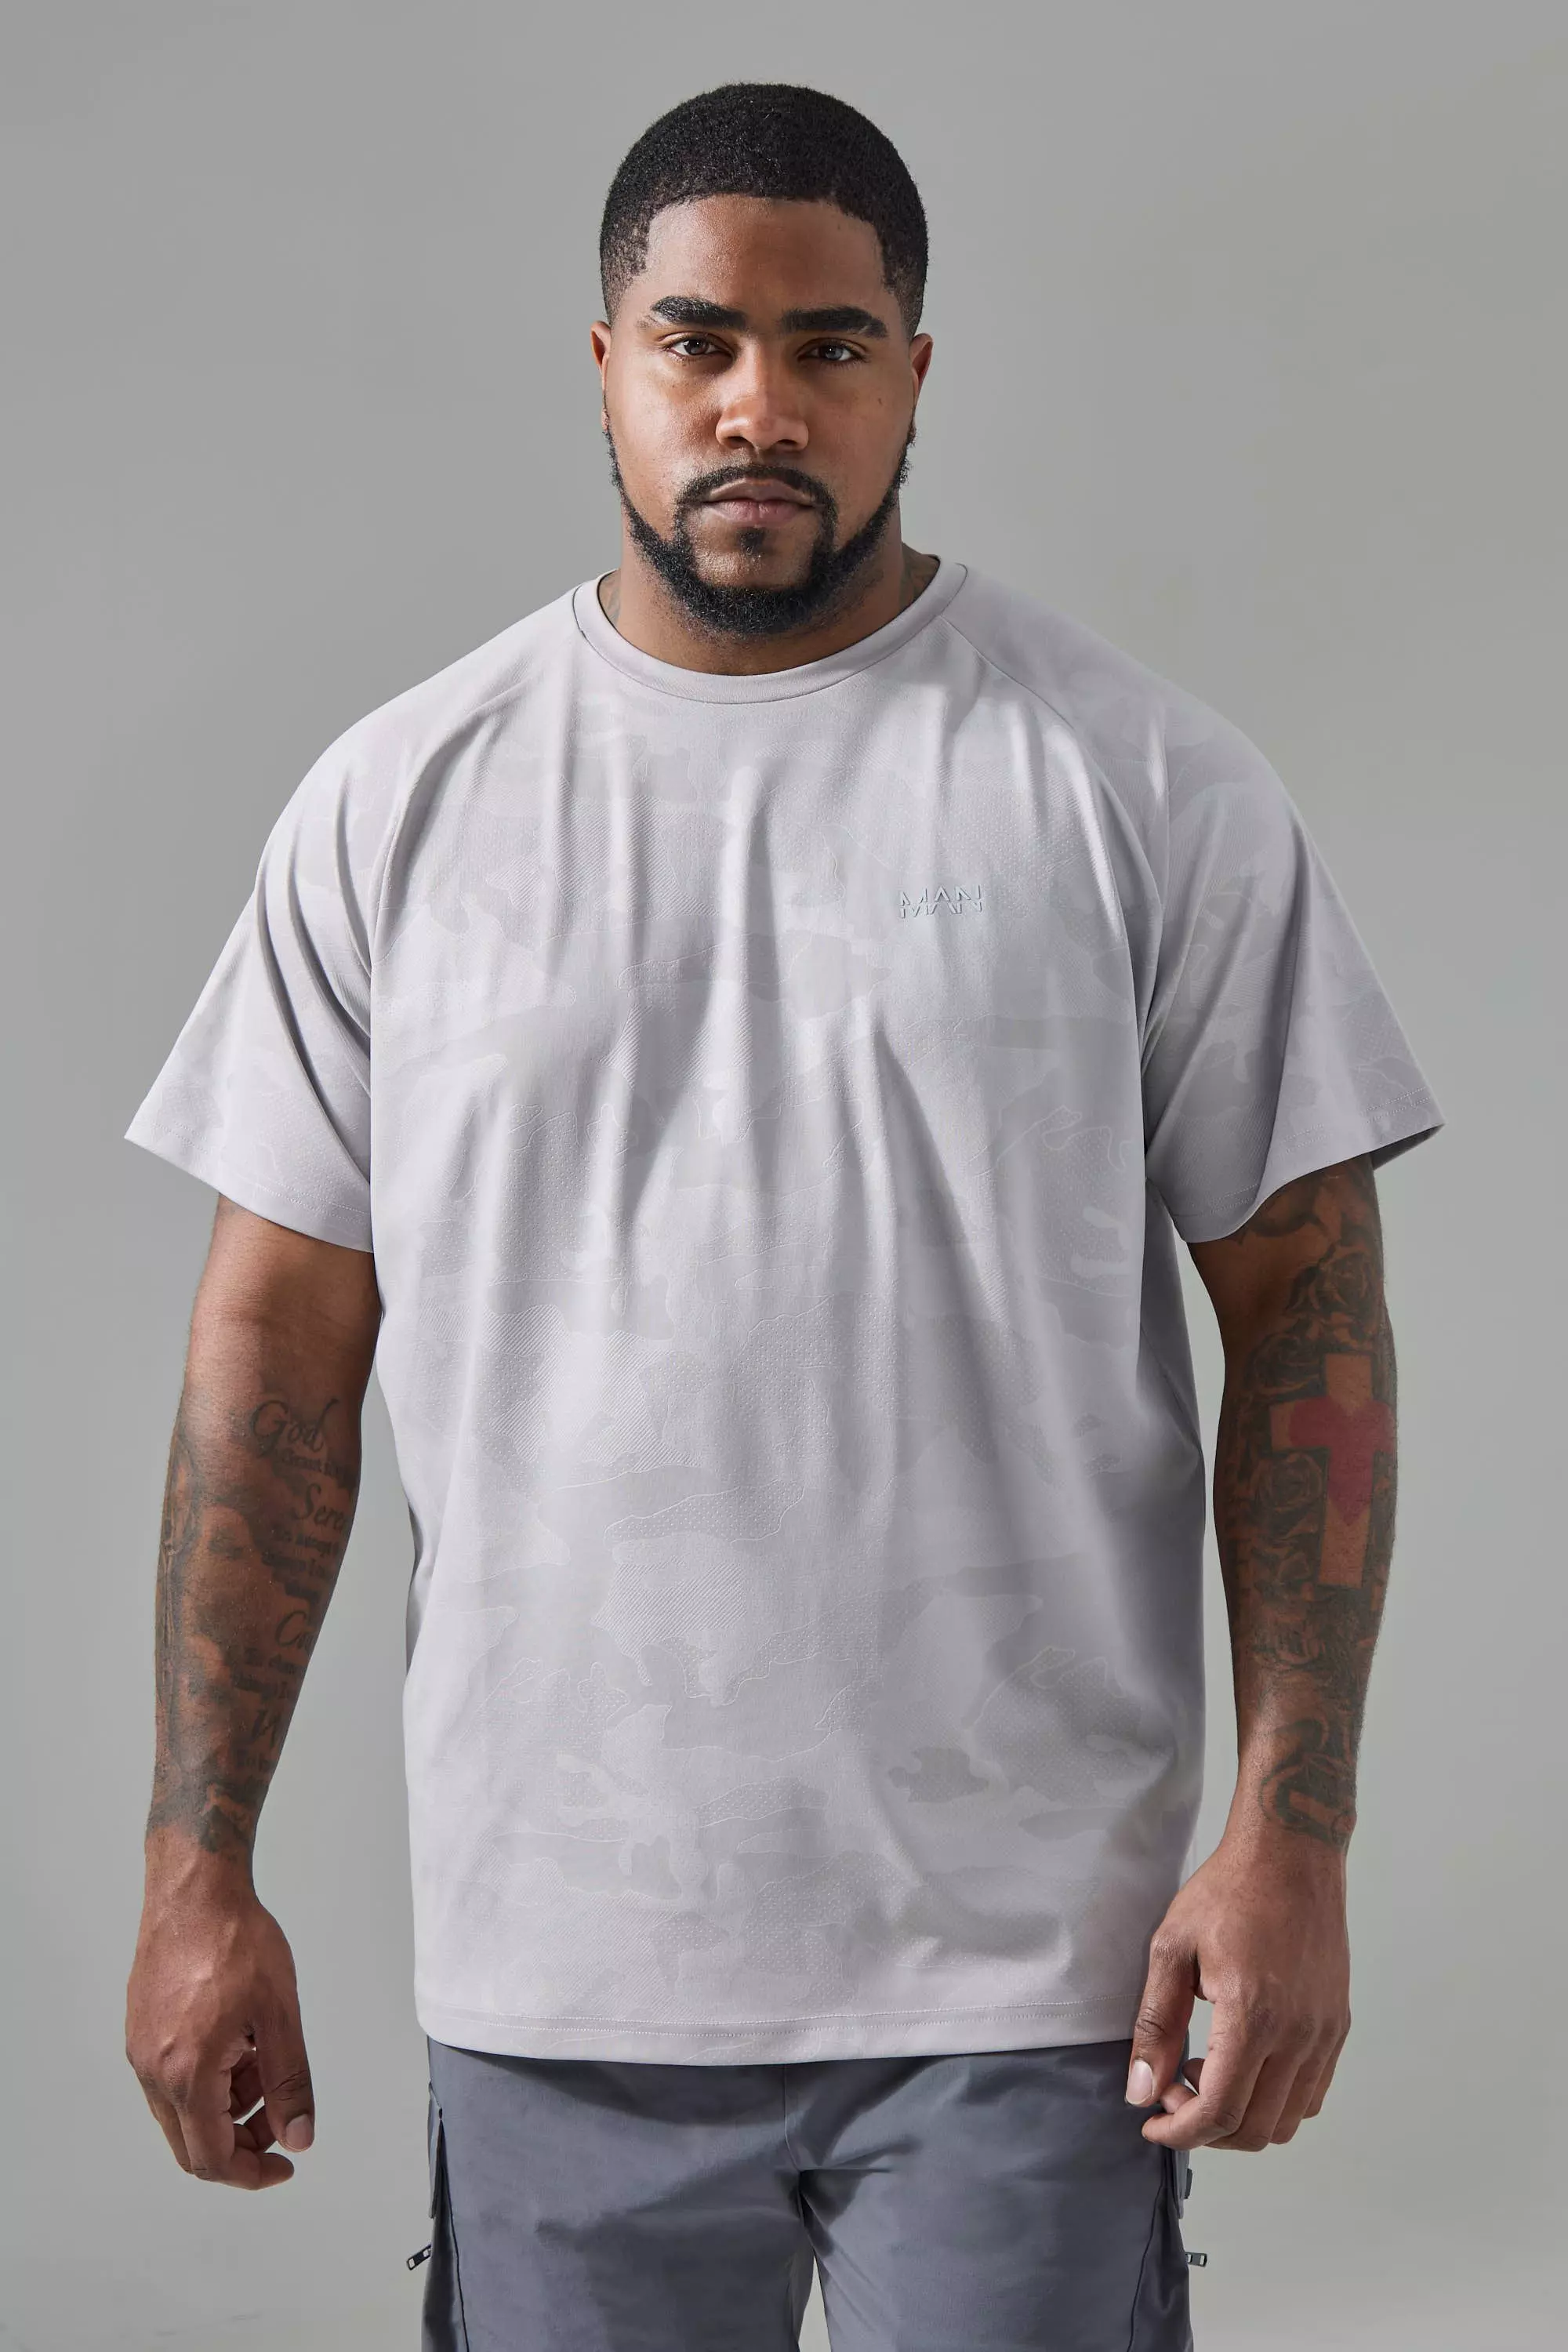 Plus Man Active Camo Raglan Performance T-shirt Grey